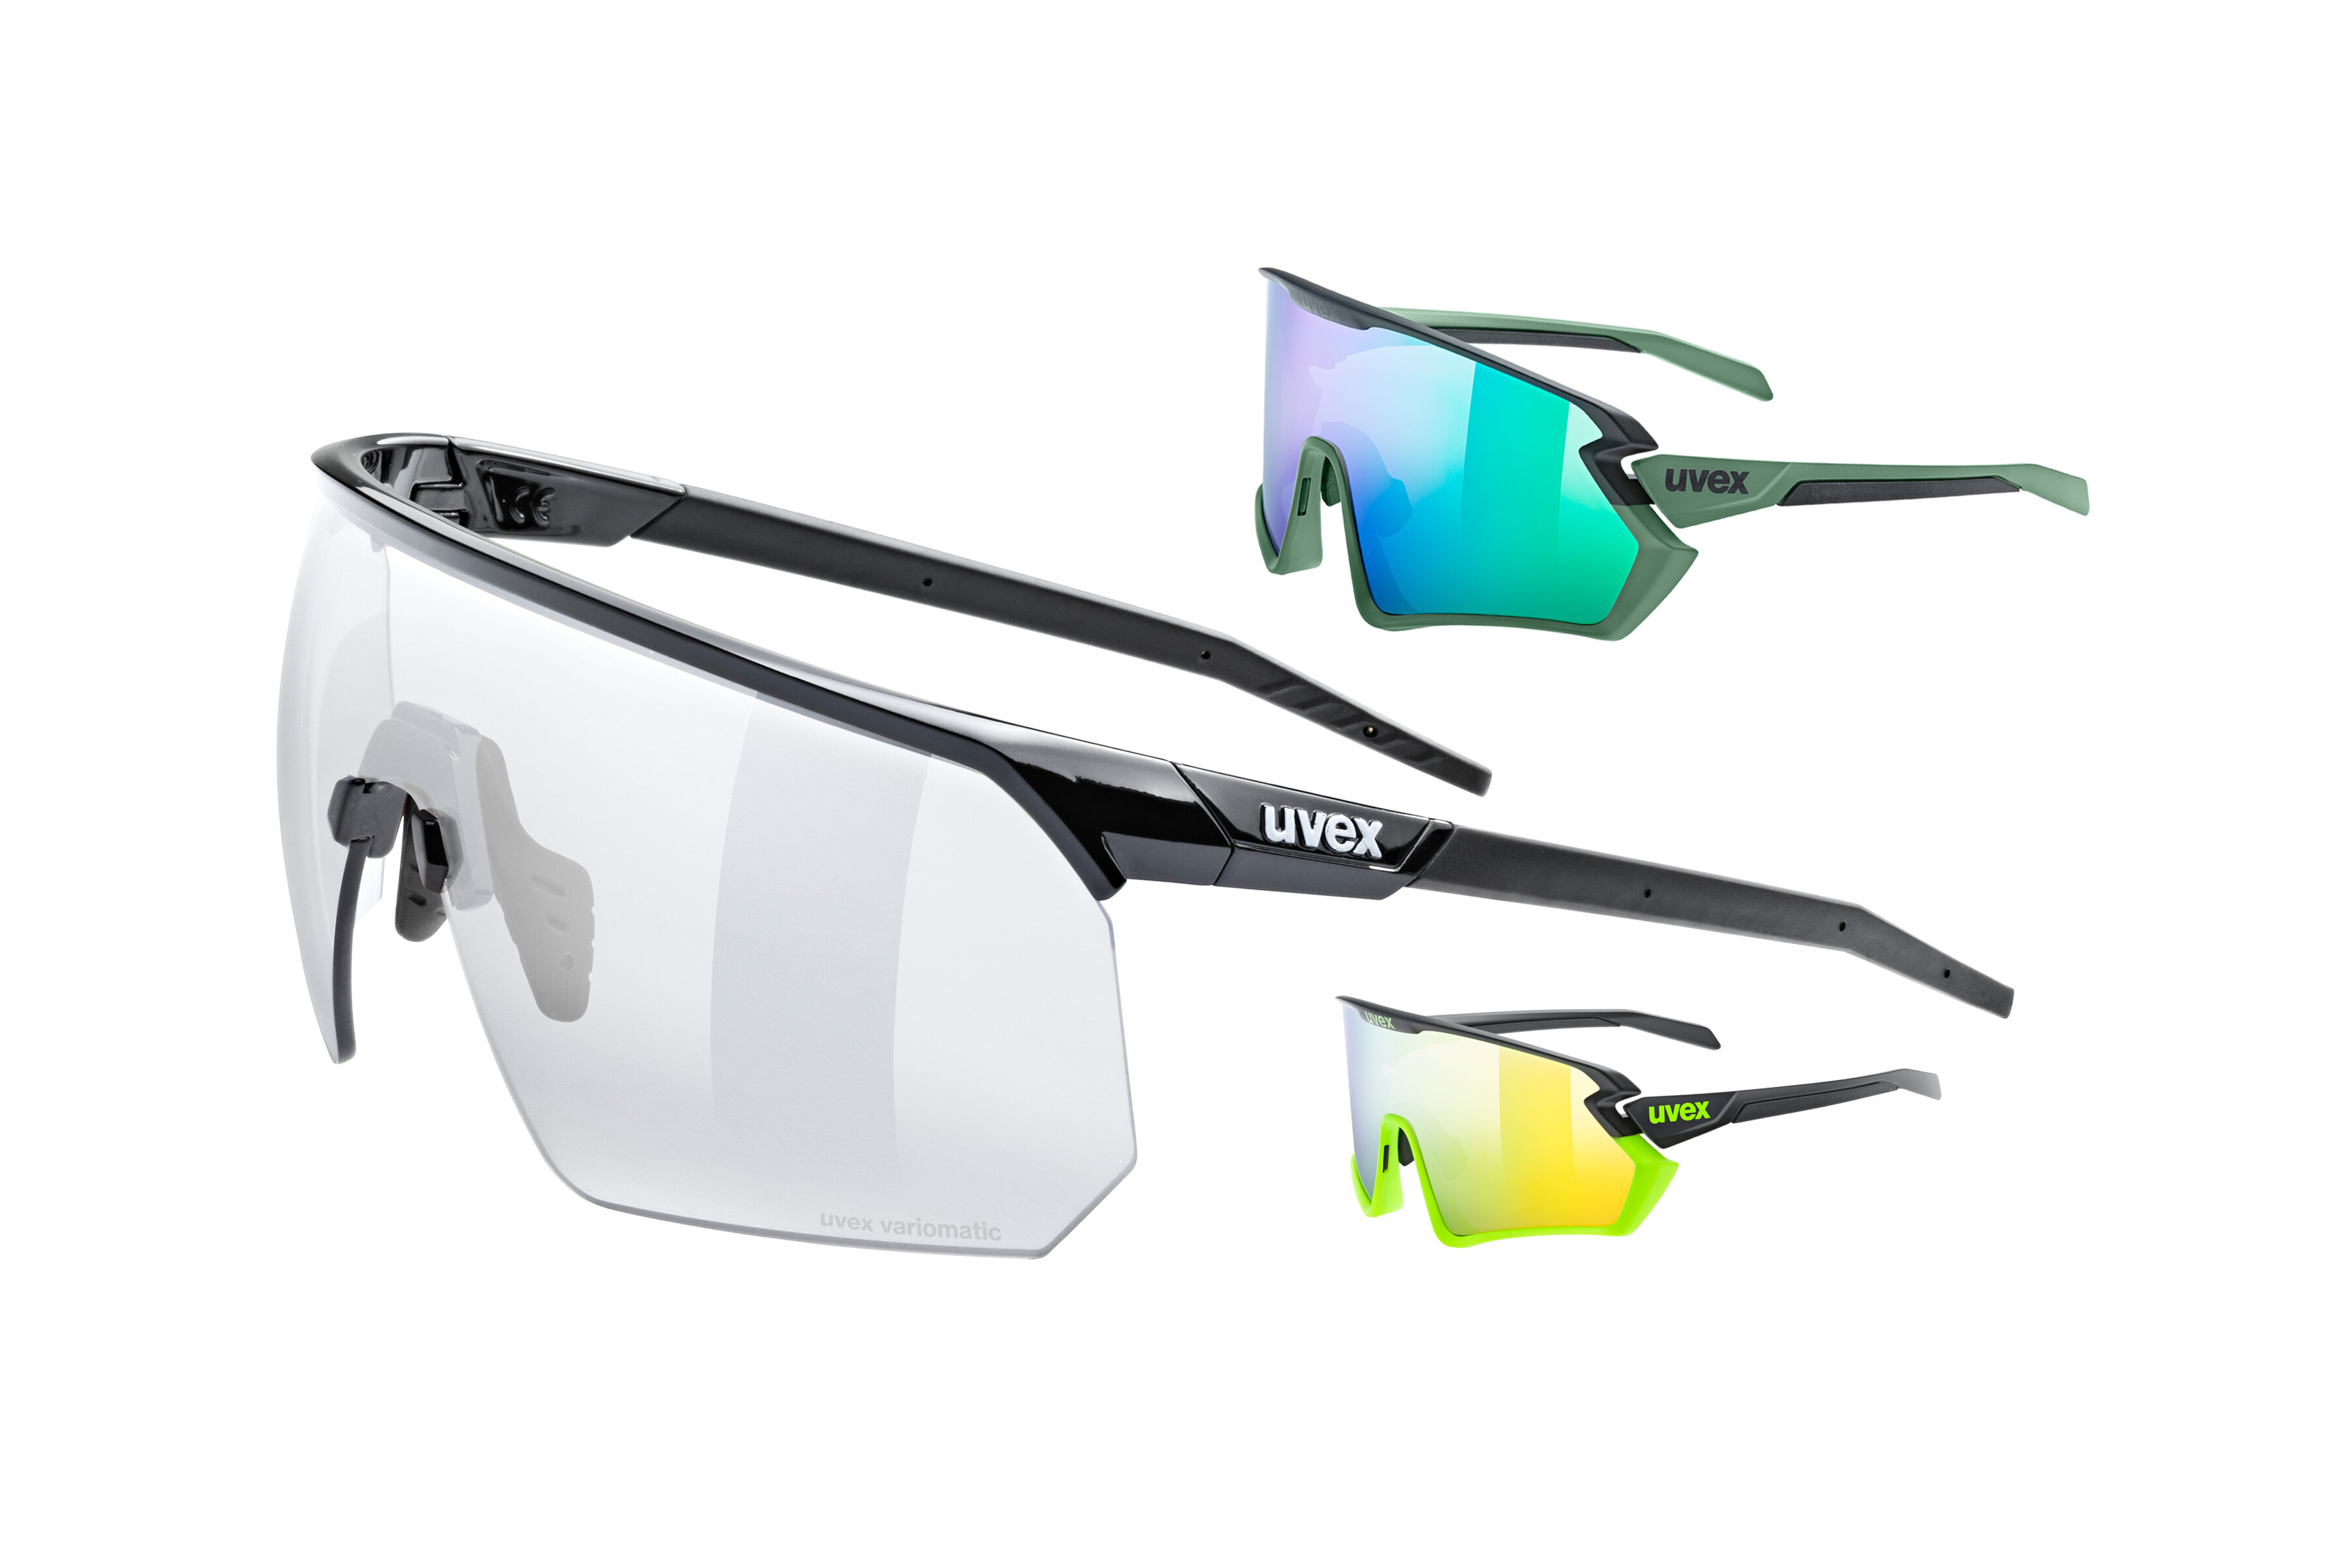 Neue Sportbrillen von Uvex: Durchblick mit Pace One V & Sportstyle 231 2.0  - Rennrad-News